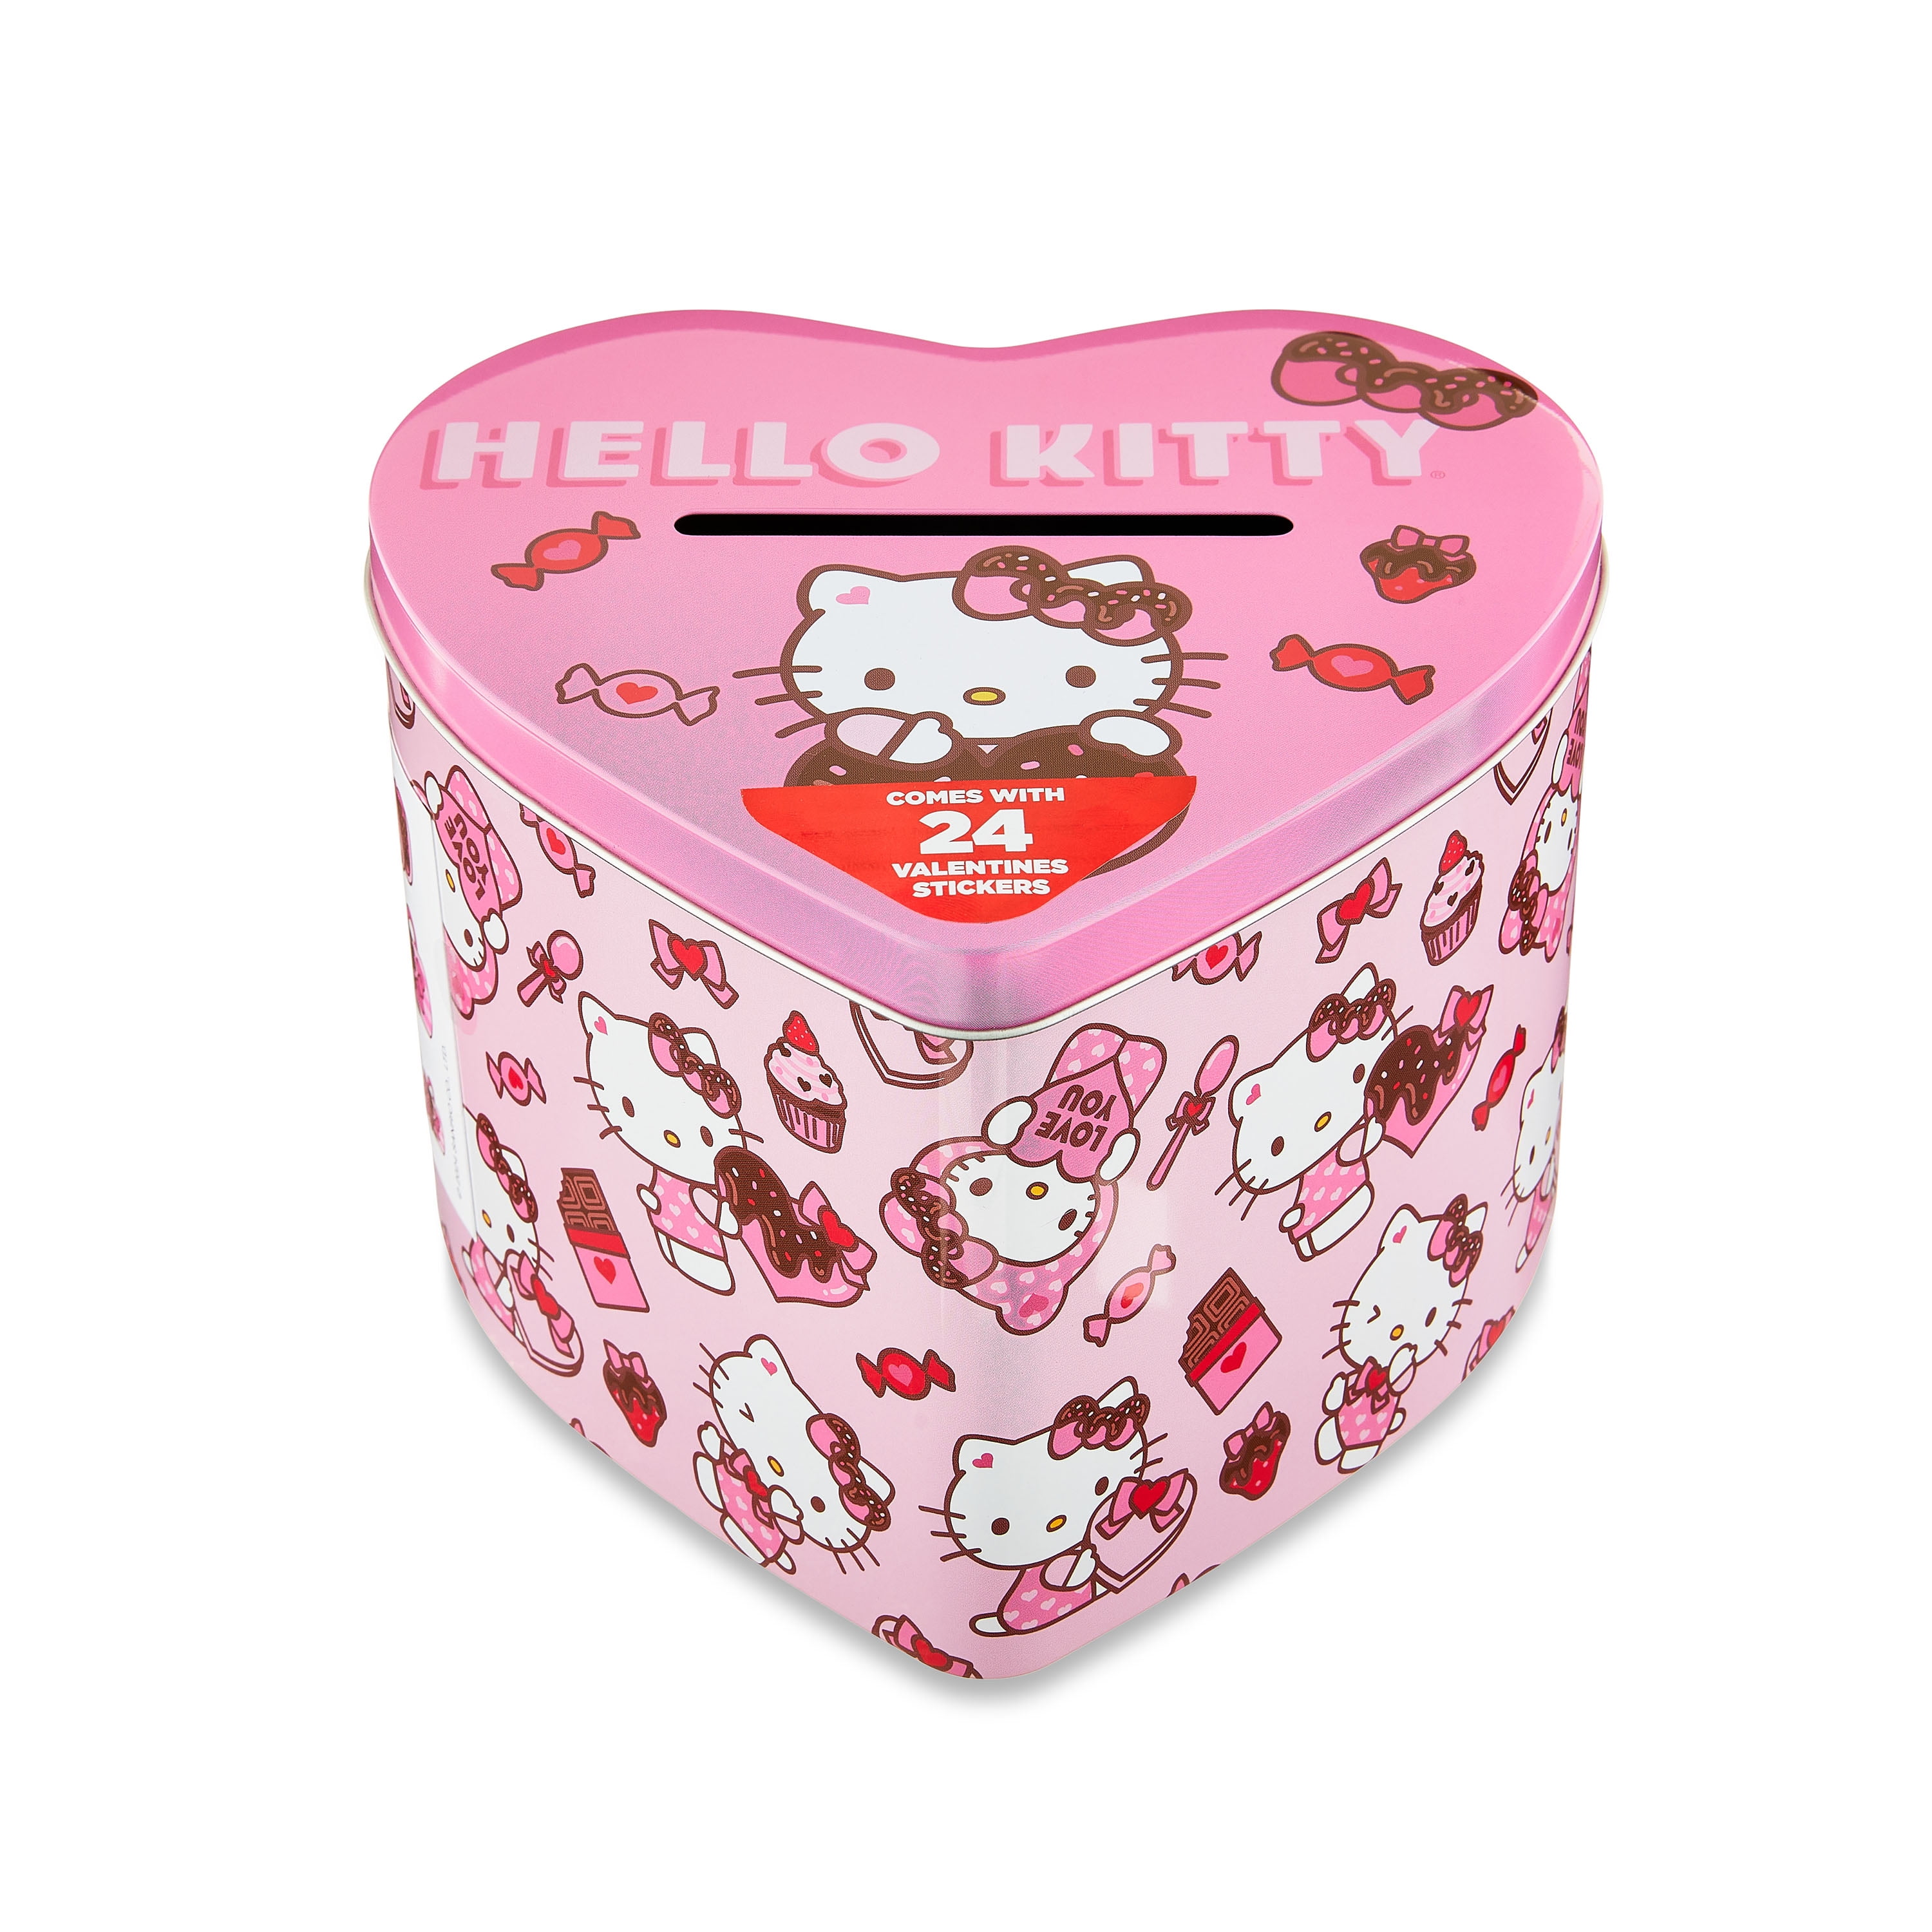 Megatoys Hello Kitty Tin Box Gift Set for Kids - Tin Box, Tin Pencil Case, Water Bottle, Puzzle, Stickers